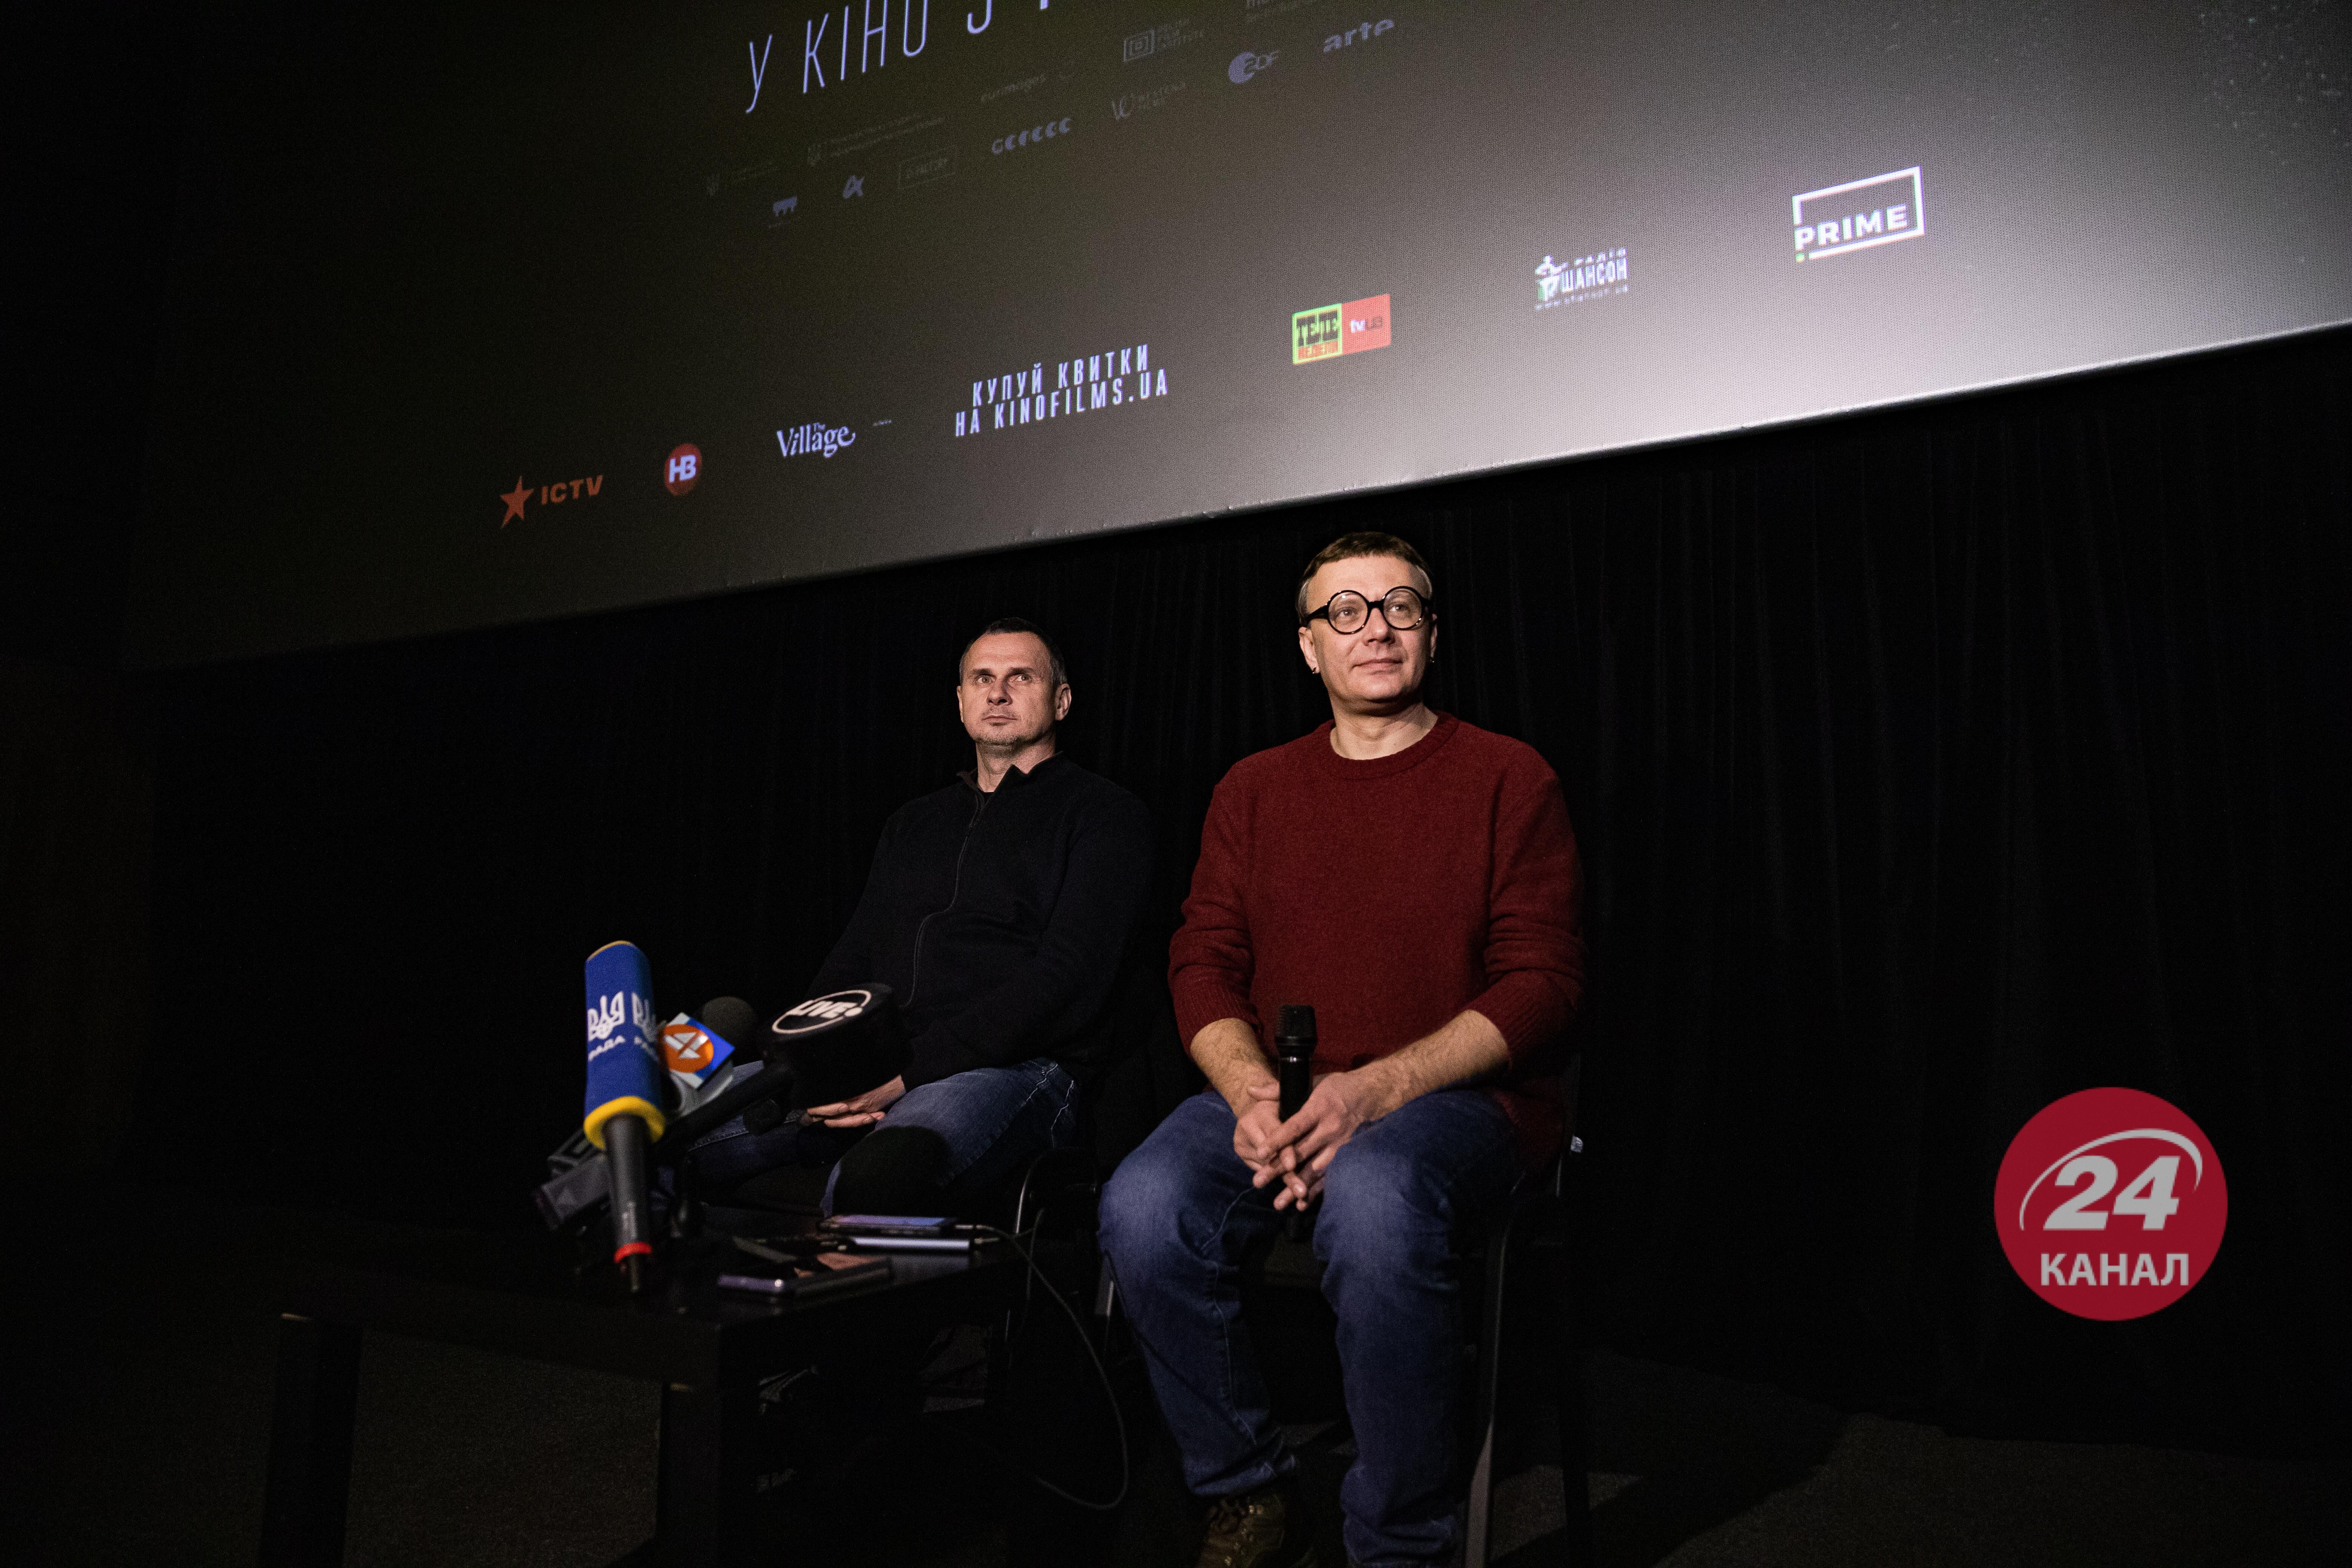 Все ждут большого фильма от Олега Сенцова, – продюсер "Носорога" о работе над премьерой